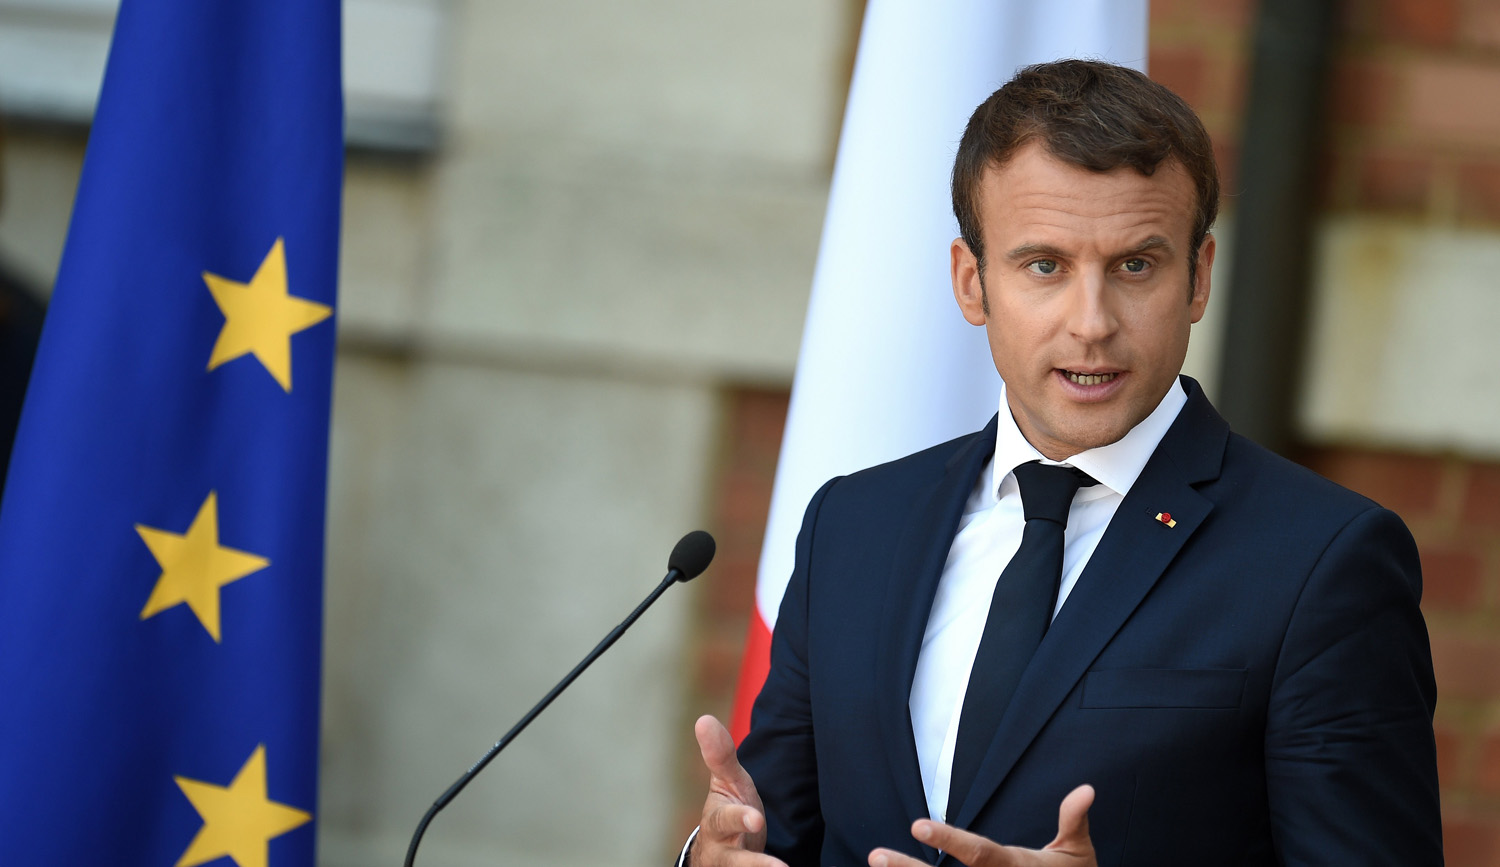 Γαλλία: Νέα πτώση της δημοτικότητας του Μακρόν στο 29% σύμφωνα με δημοσκόπηση